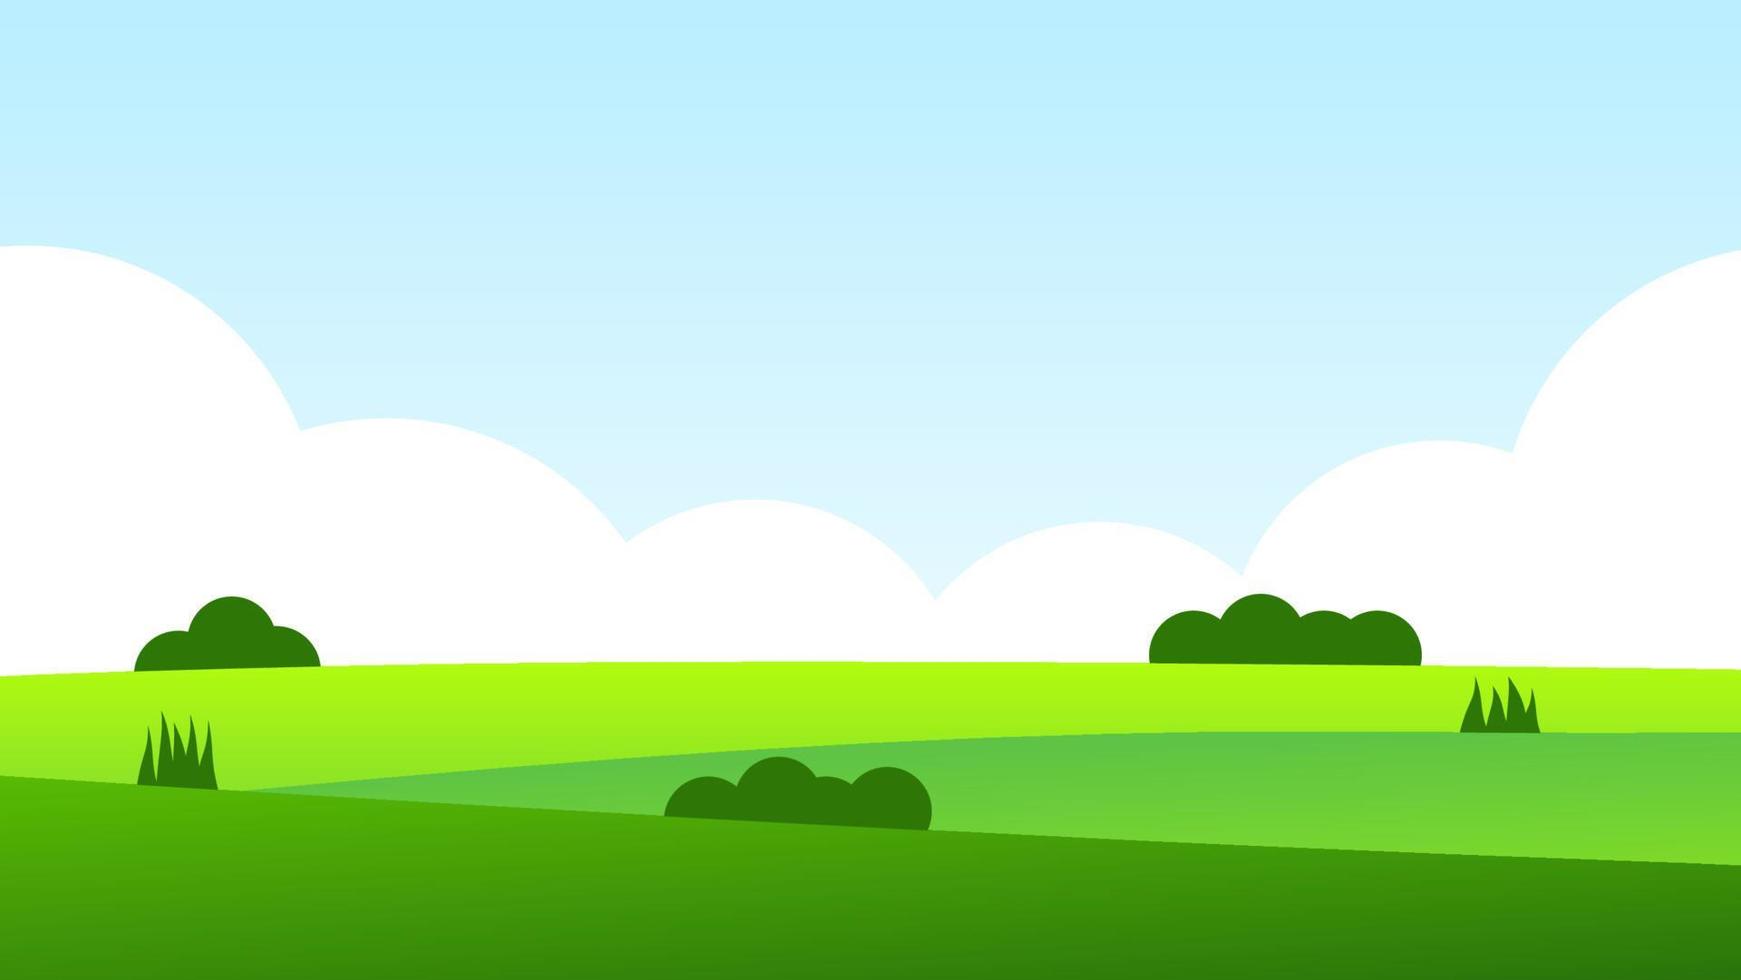 Landschaftskarikaturszene mit grünen Hügeln und weißer Wolke im Sommerhintergrund des blauen Himmels vektor